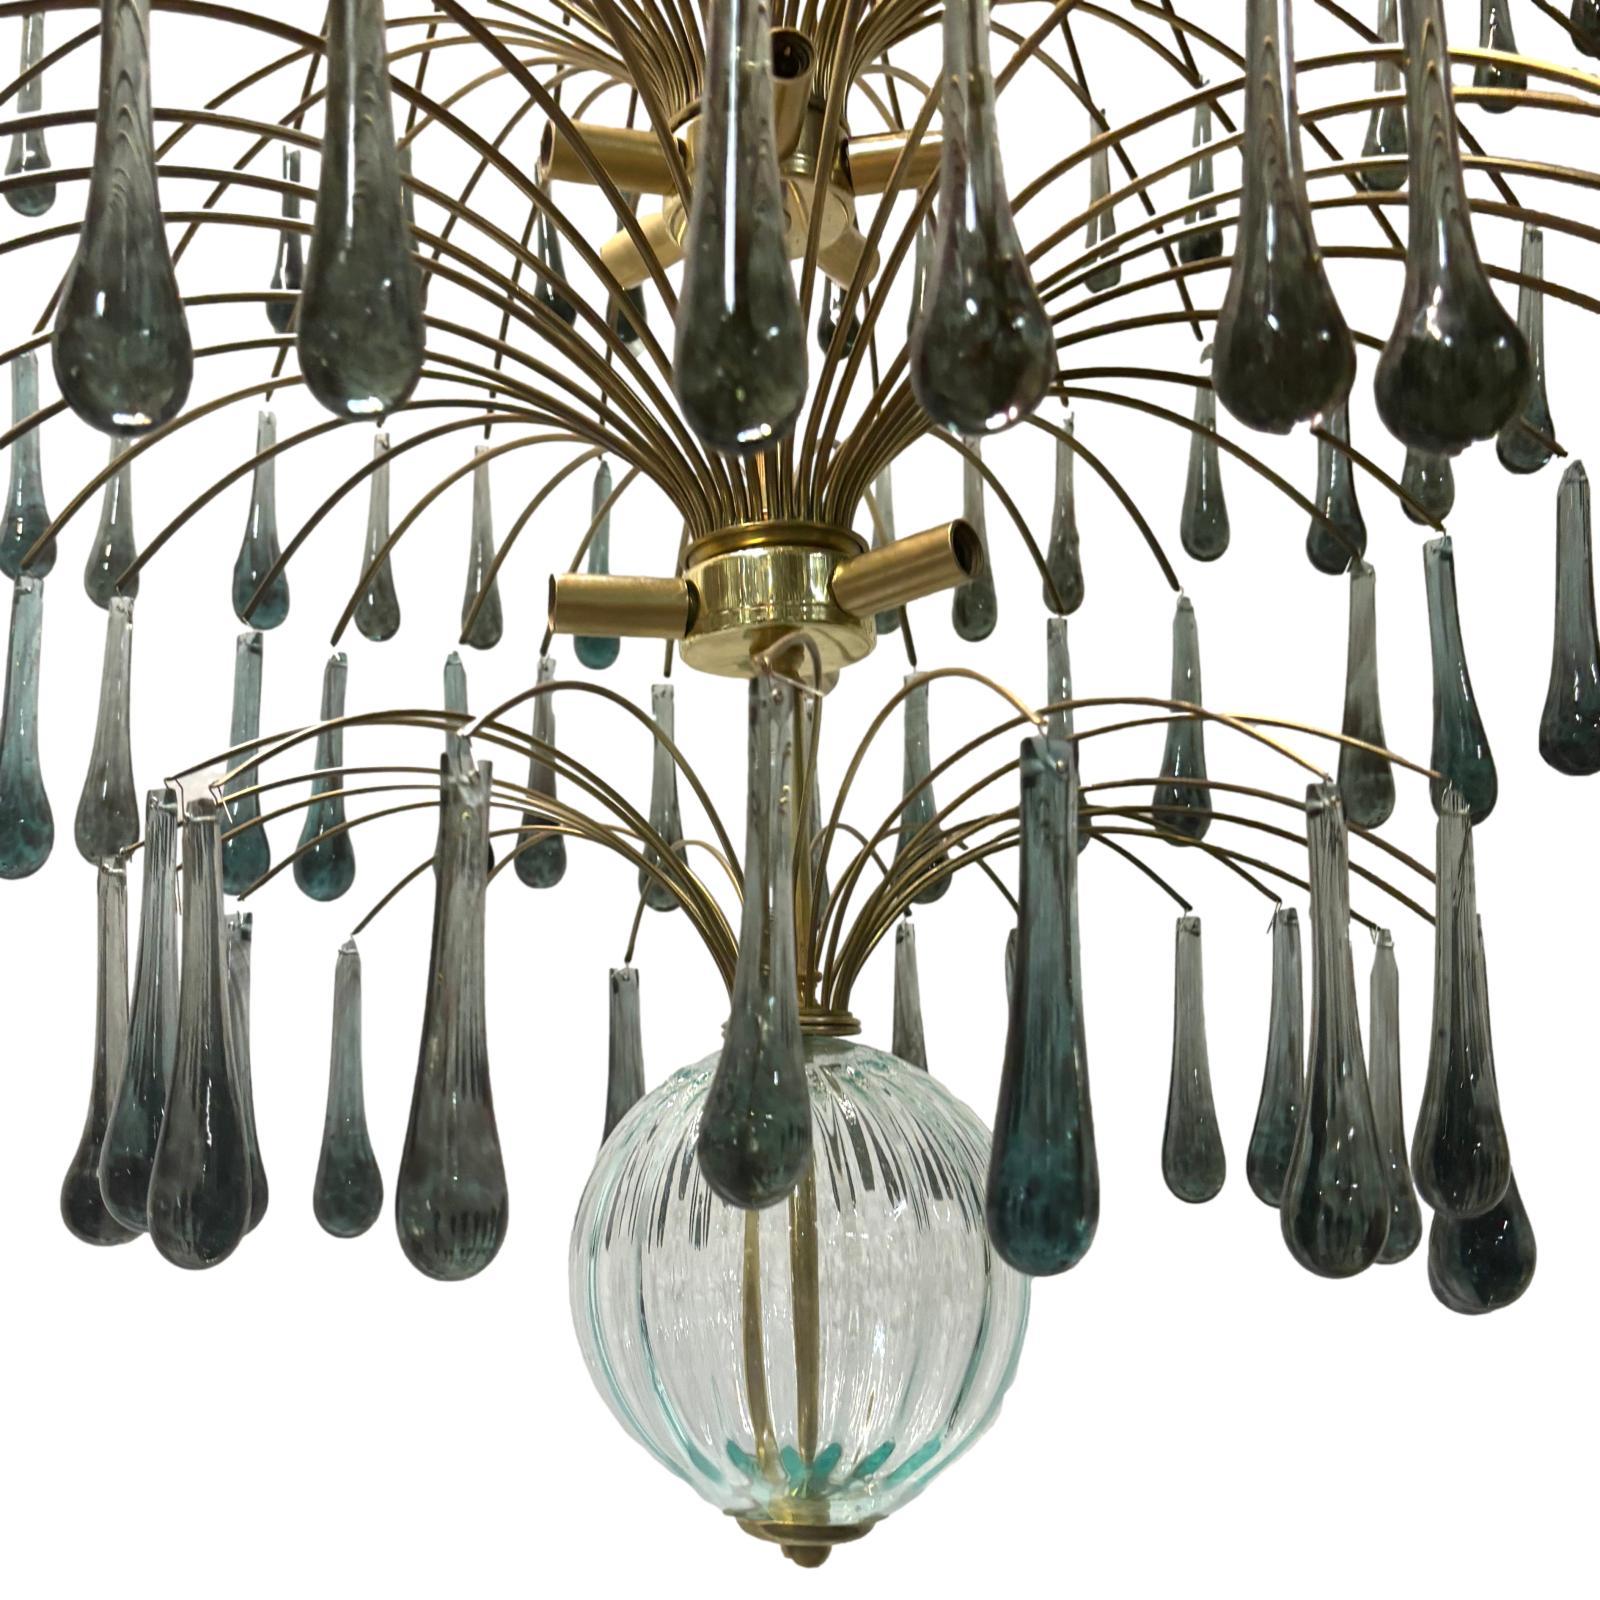 Paire de grands luminaires italiens des années 1960 en bronze doré avec des gouttes en verre bleu foncé et 13 lumières intérieures. Vendu à l'unité.

Mesures :
Diamètre : 44